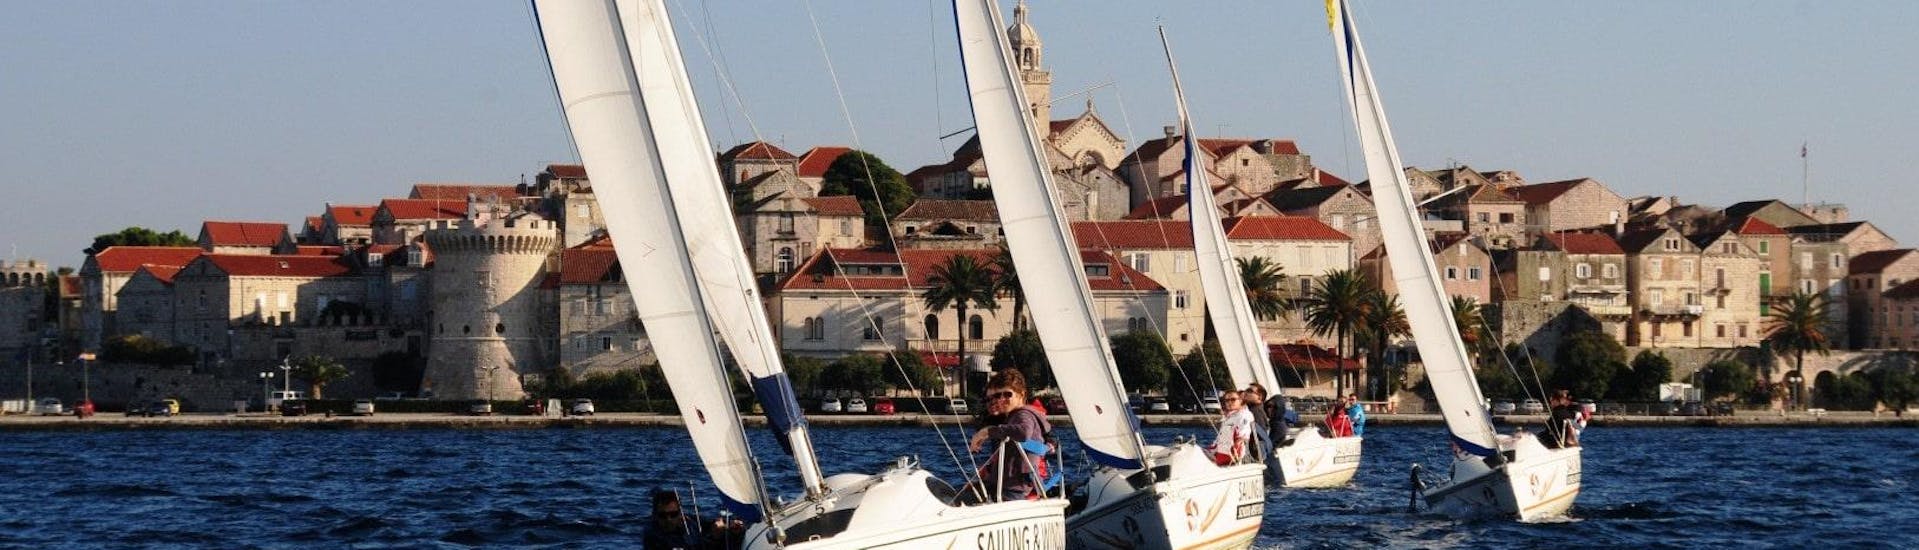 Gita in barca a vela da Korčula (town) a Lastovo con bagno in mare e osservazione della fauna selvatica.